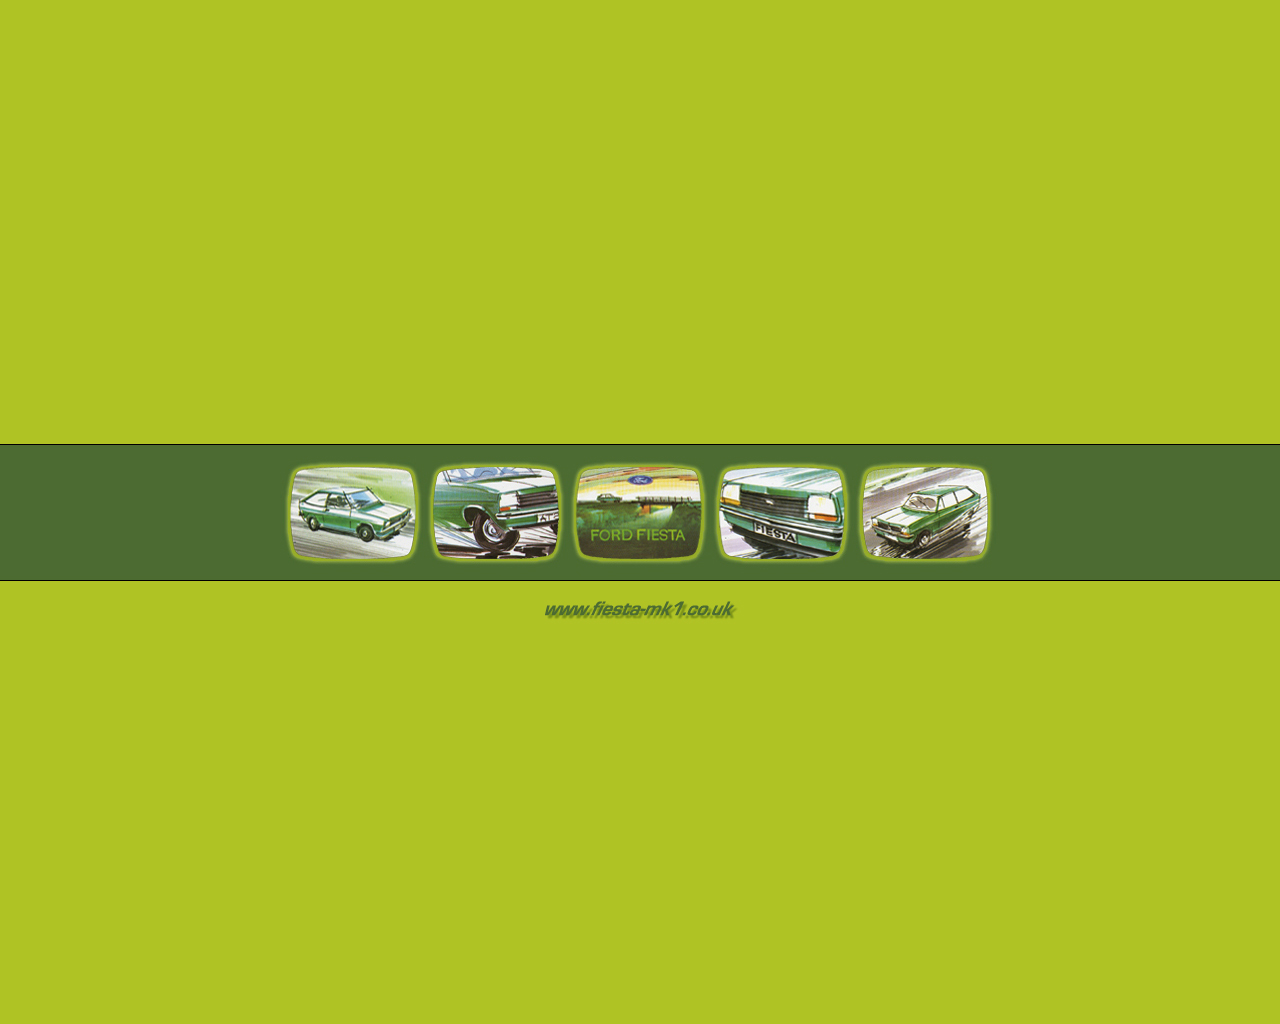 Fiesta MK1 Light Green 1280 x 1024